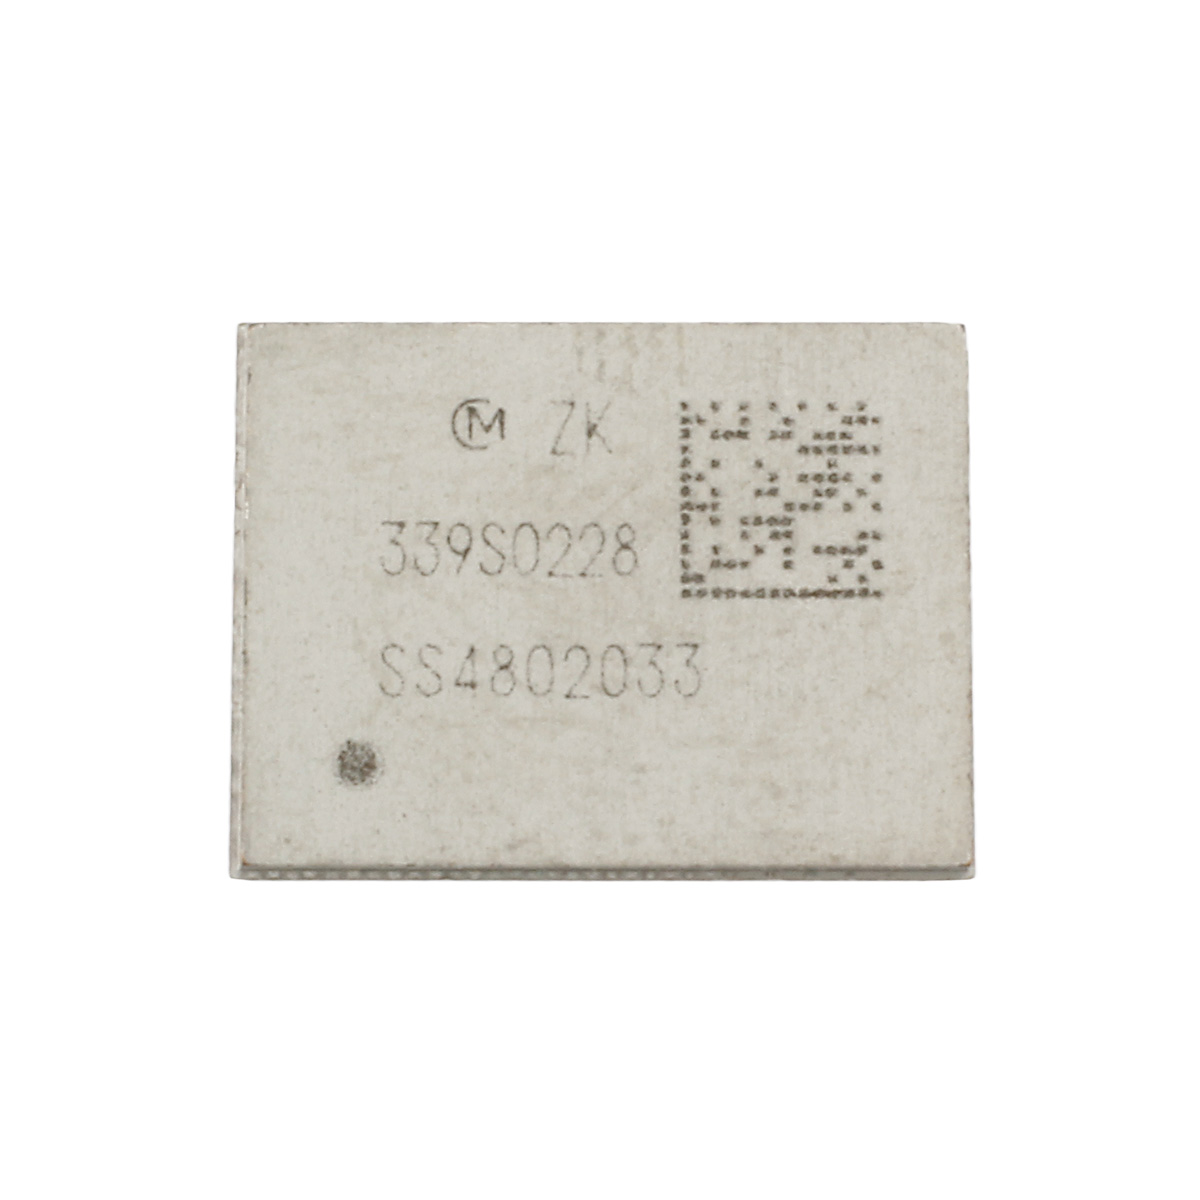 IC Chip RF WiFi 339S0228 Kompatibel mit iPhone 6 Plus